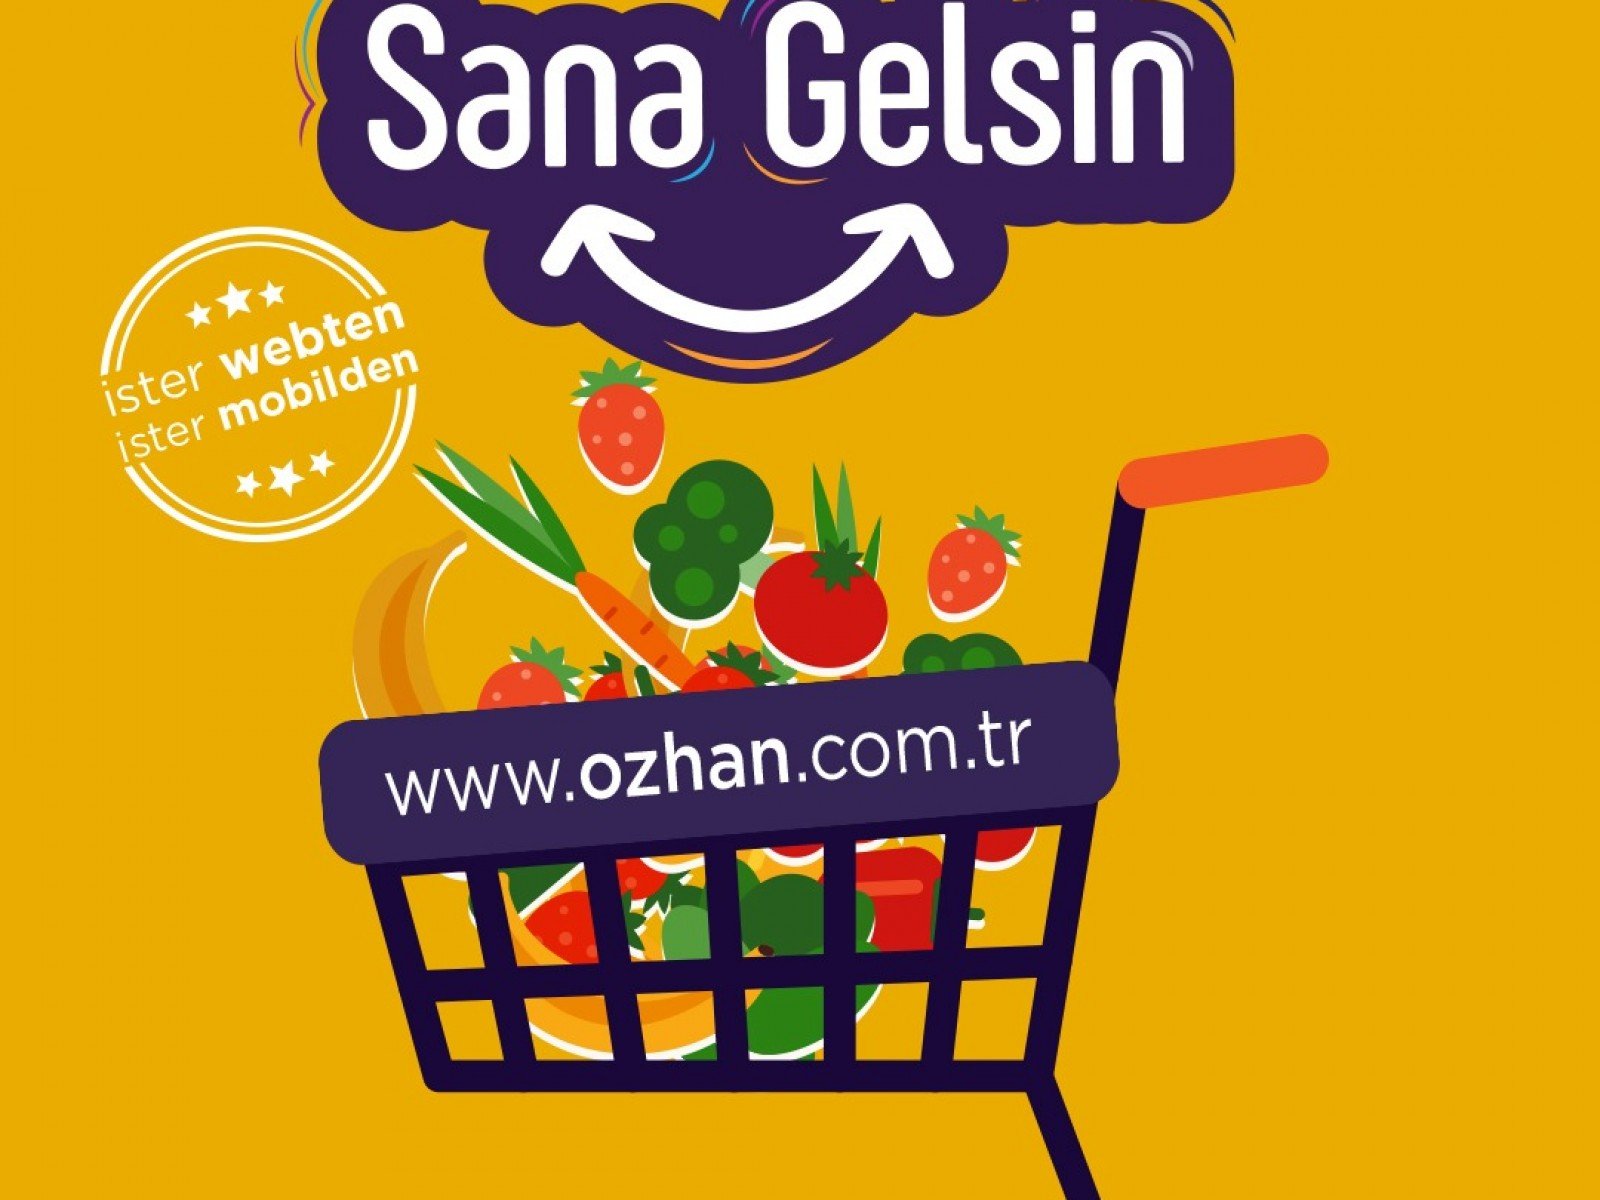 Özhan’da online alışveriş tam gaz